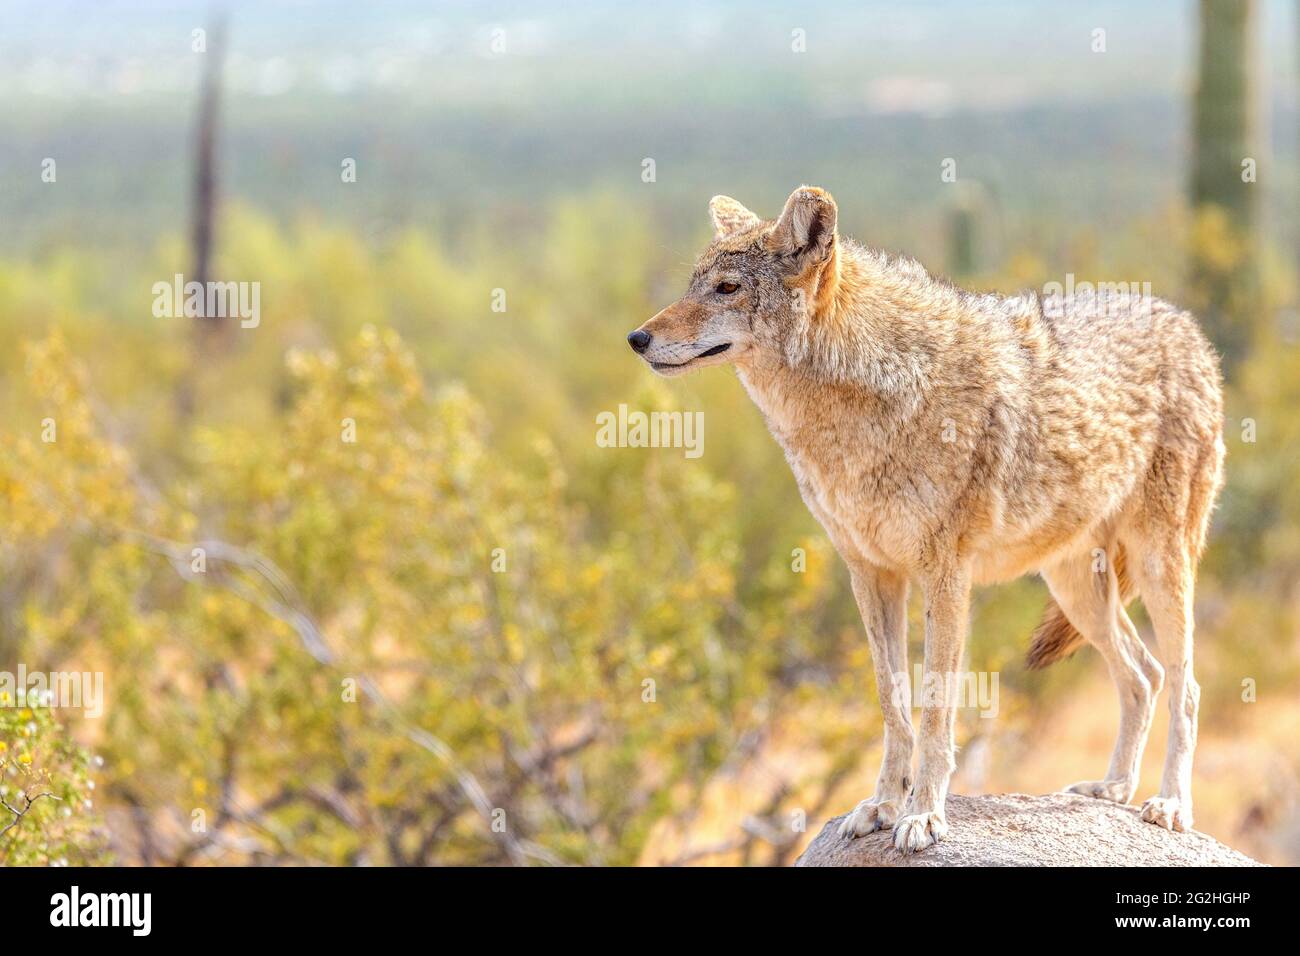 Desert Coyote Vermessung seines Territoriums Stehen auf einem Felsen in der wilden Sonoran Wüste. Coyote umgeben von gelben Borstenbuschblumen unter dem hellen Stockfoto